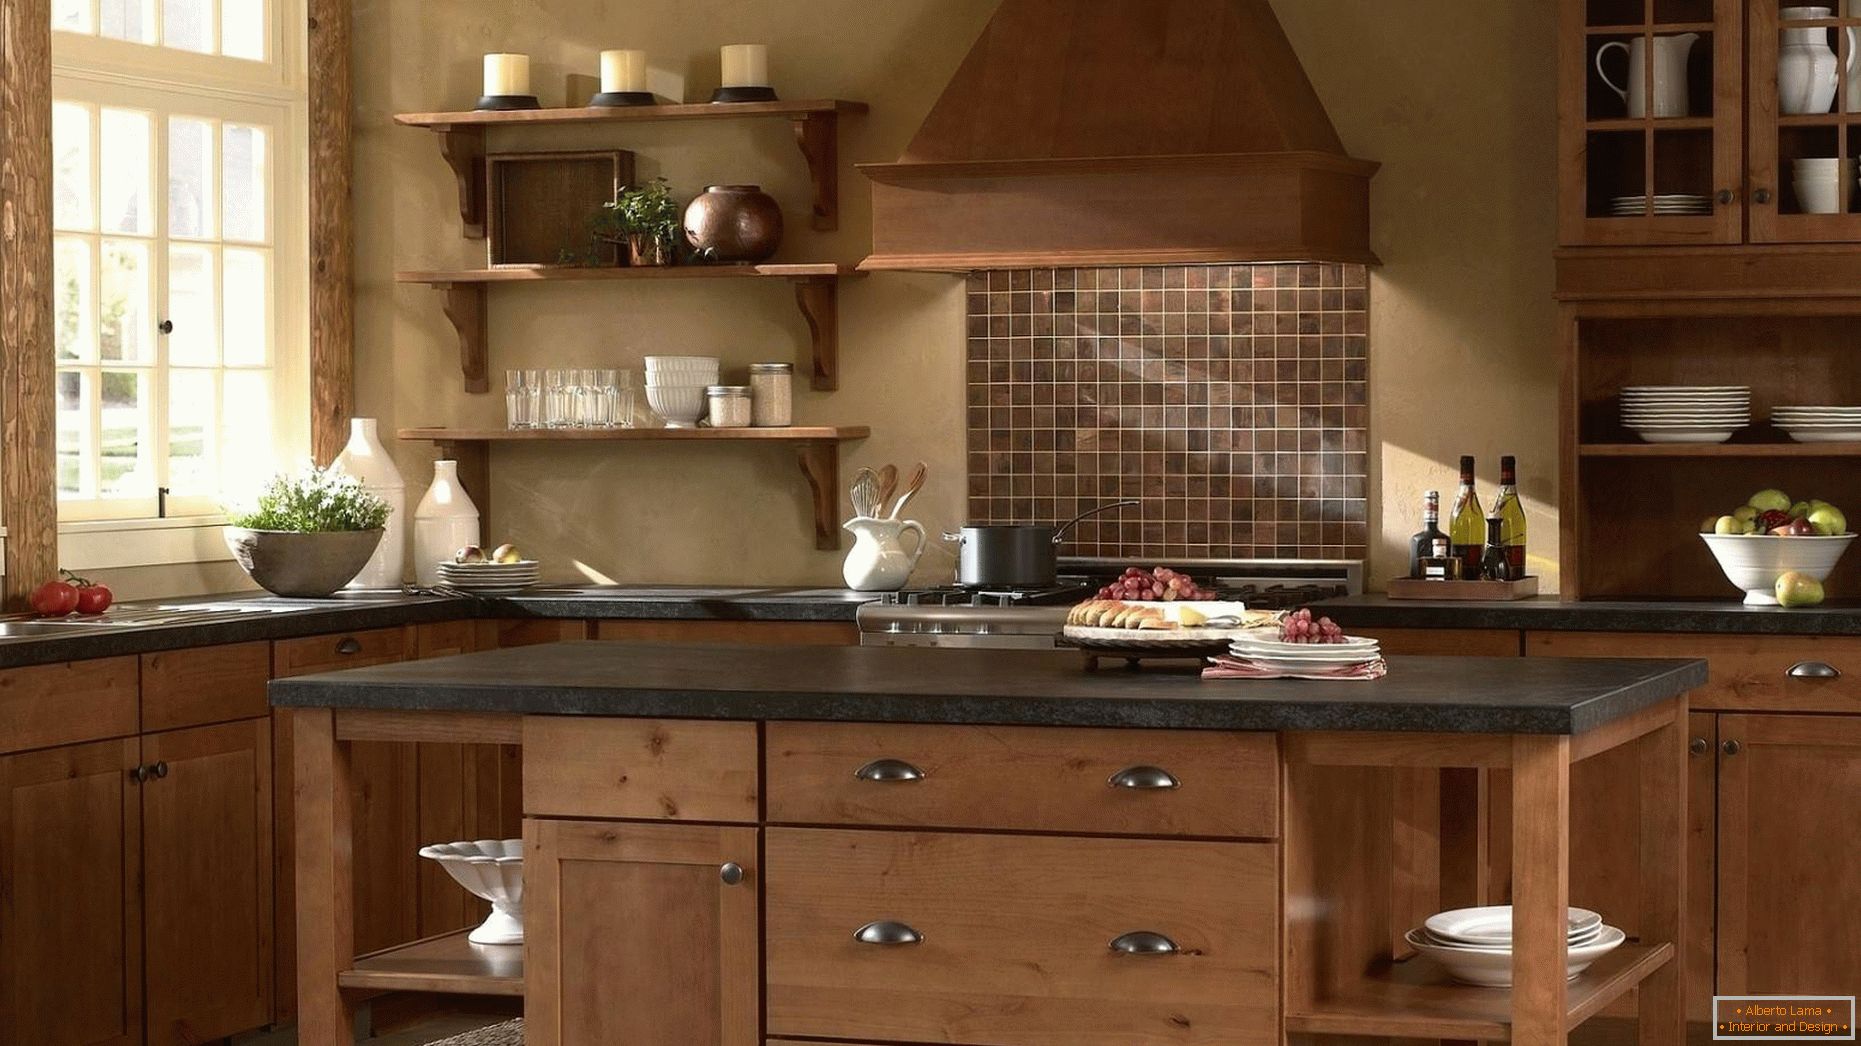 Les cuisines en bois sont classiques!